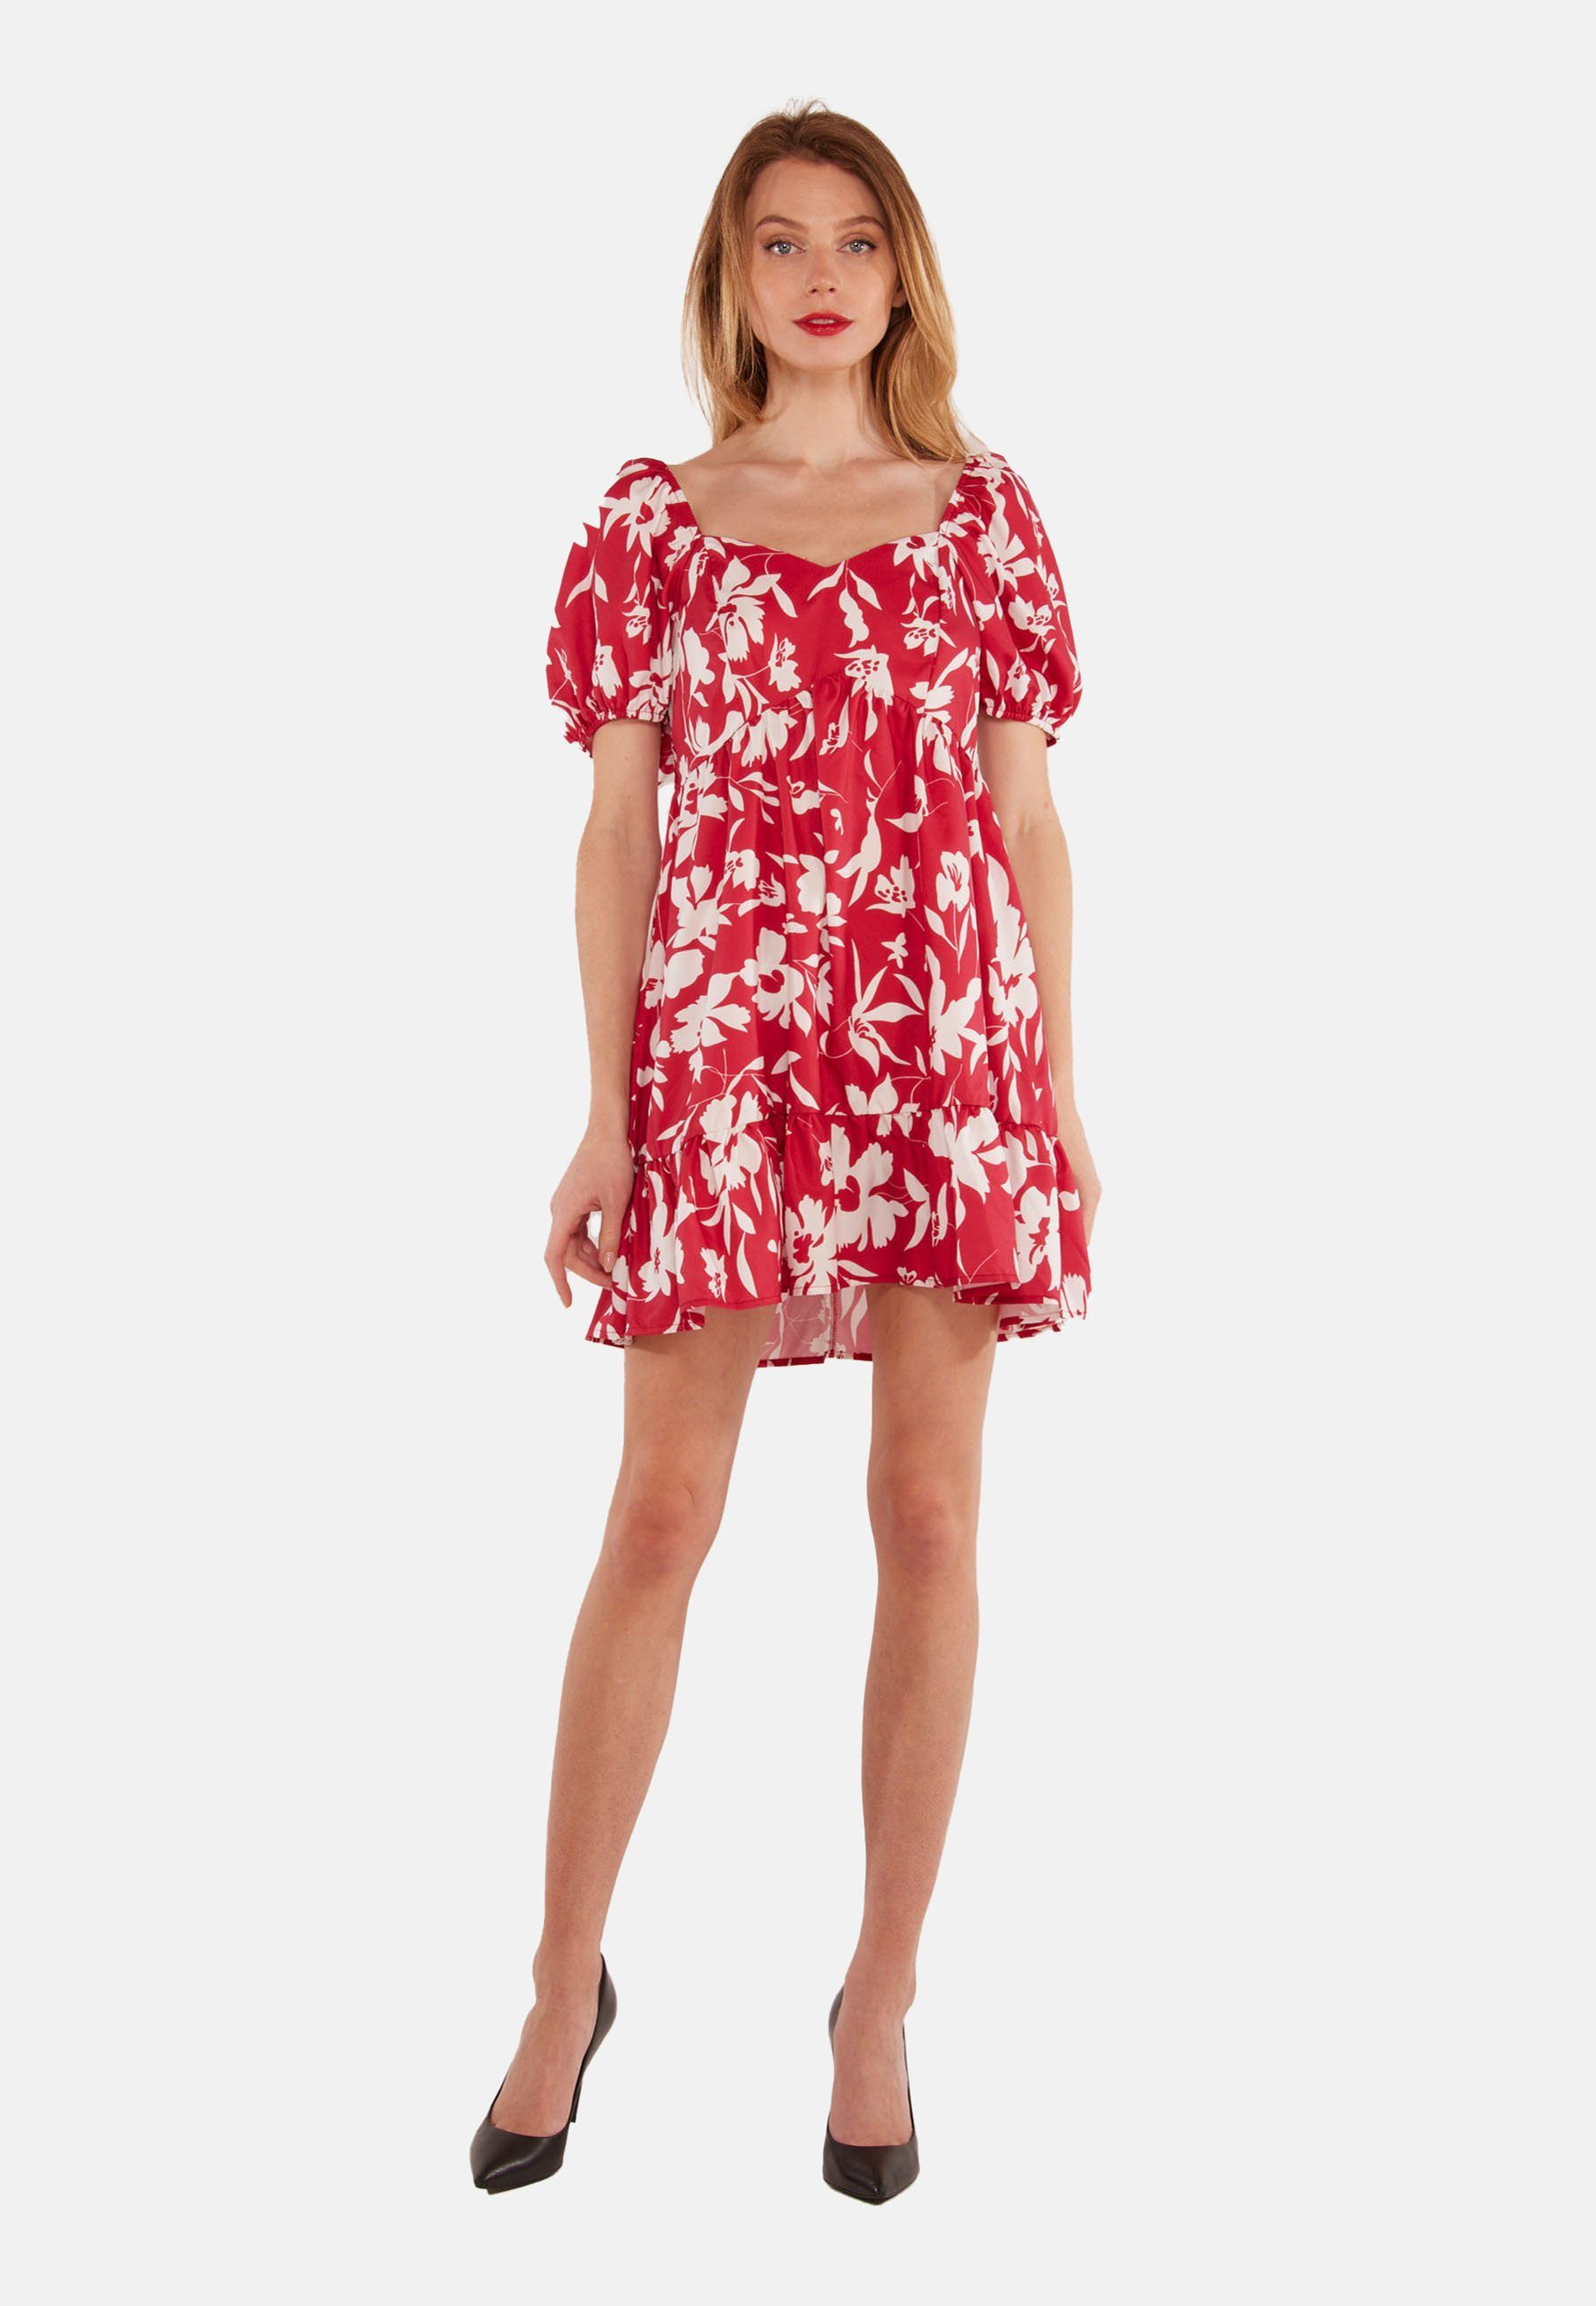 Kleid Minikleid atmungsaktiv Rot/weiss Flower Tooche